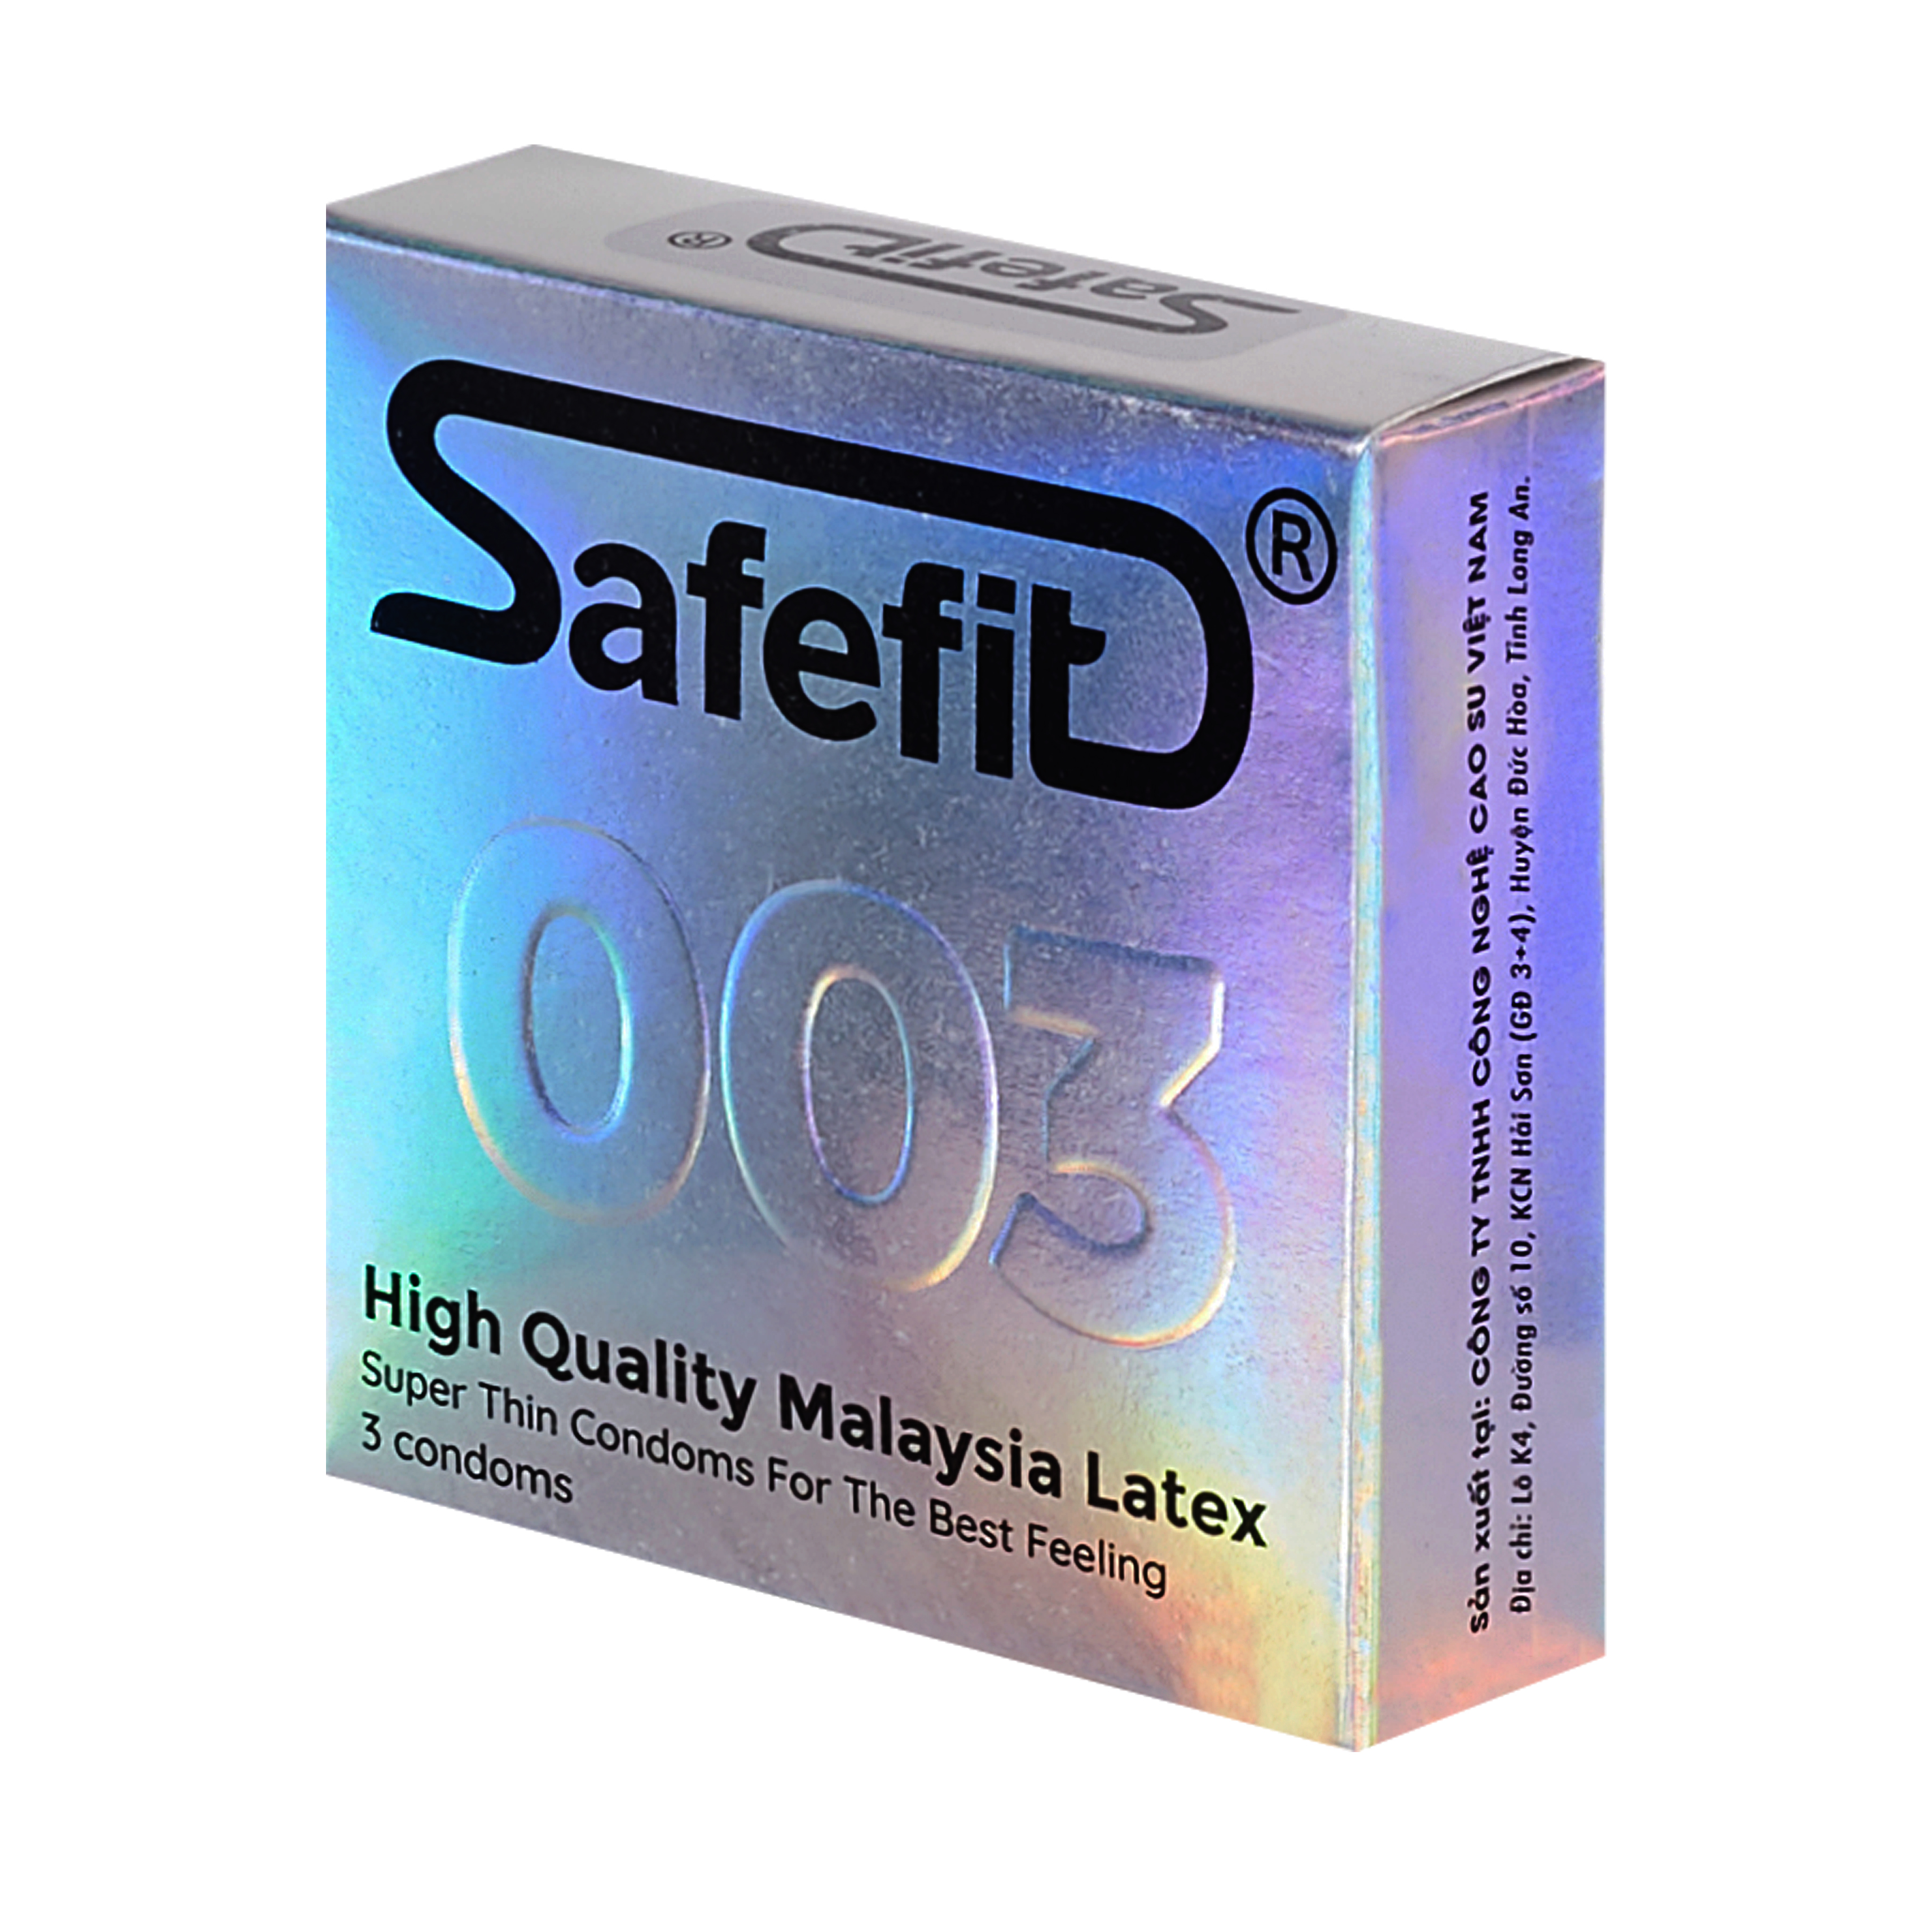 Bao cao su SafeFit siêu mỏng 003 hộp 3 cái